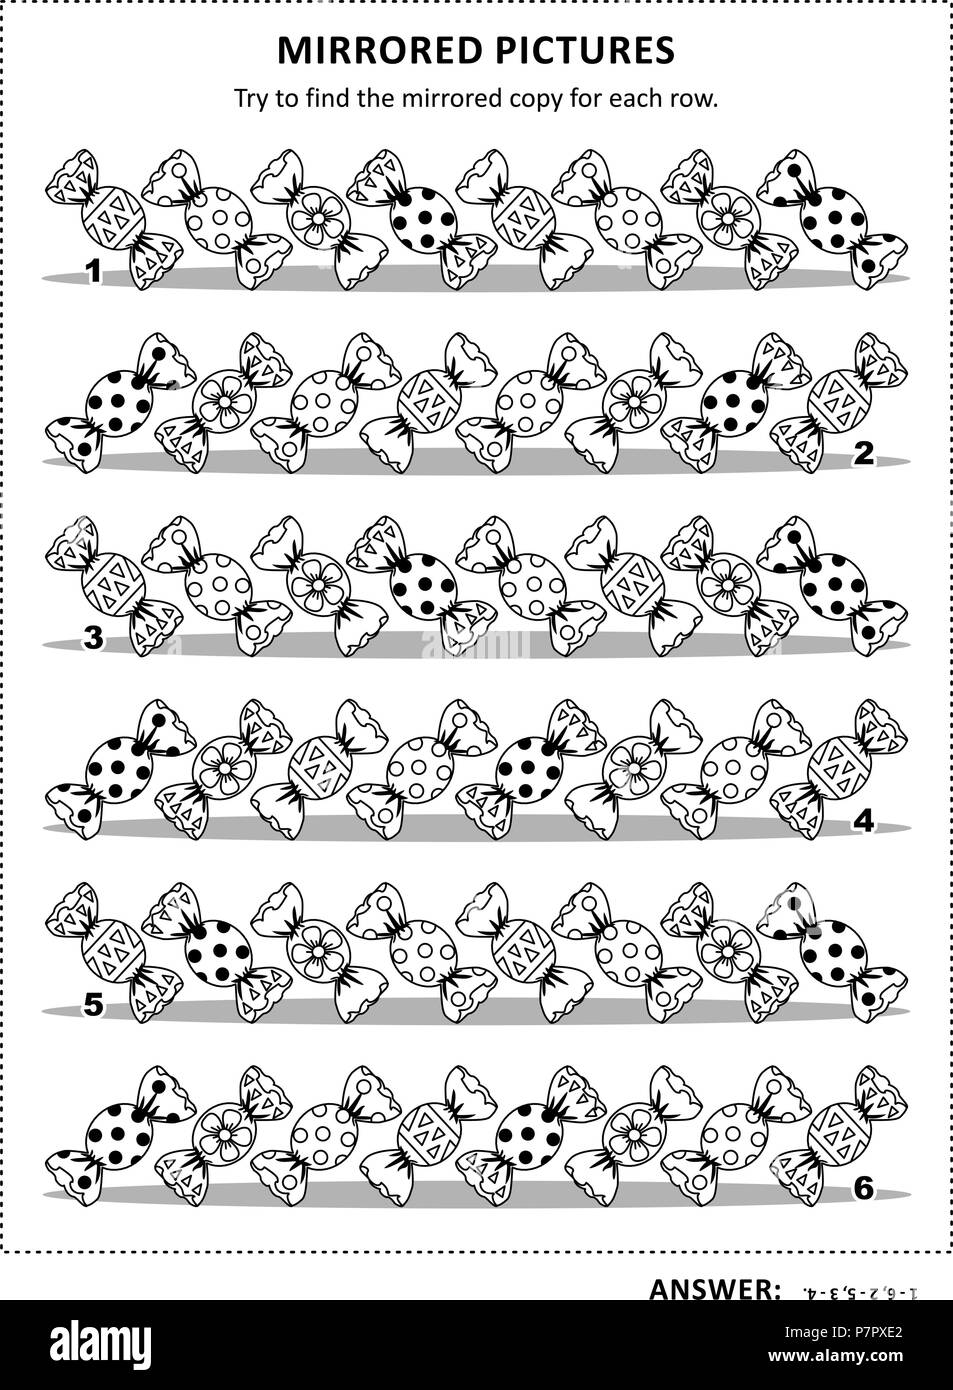 Formazione IQ visual puzzle e pagina di colorazione con caramelle: provare a trovare copia di mirroring per ogni riga. Risposta inclusa. Illustrazione Vettoriale